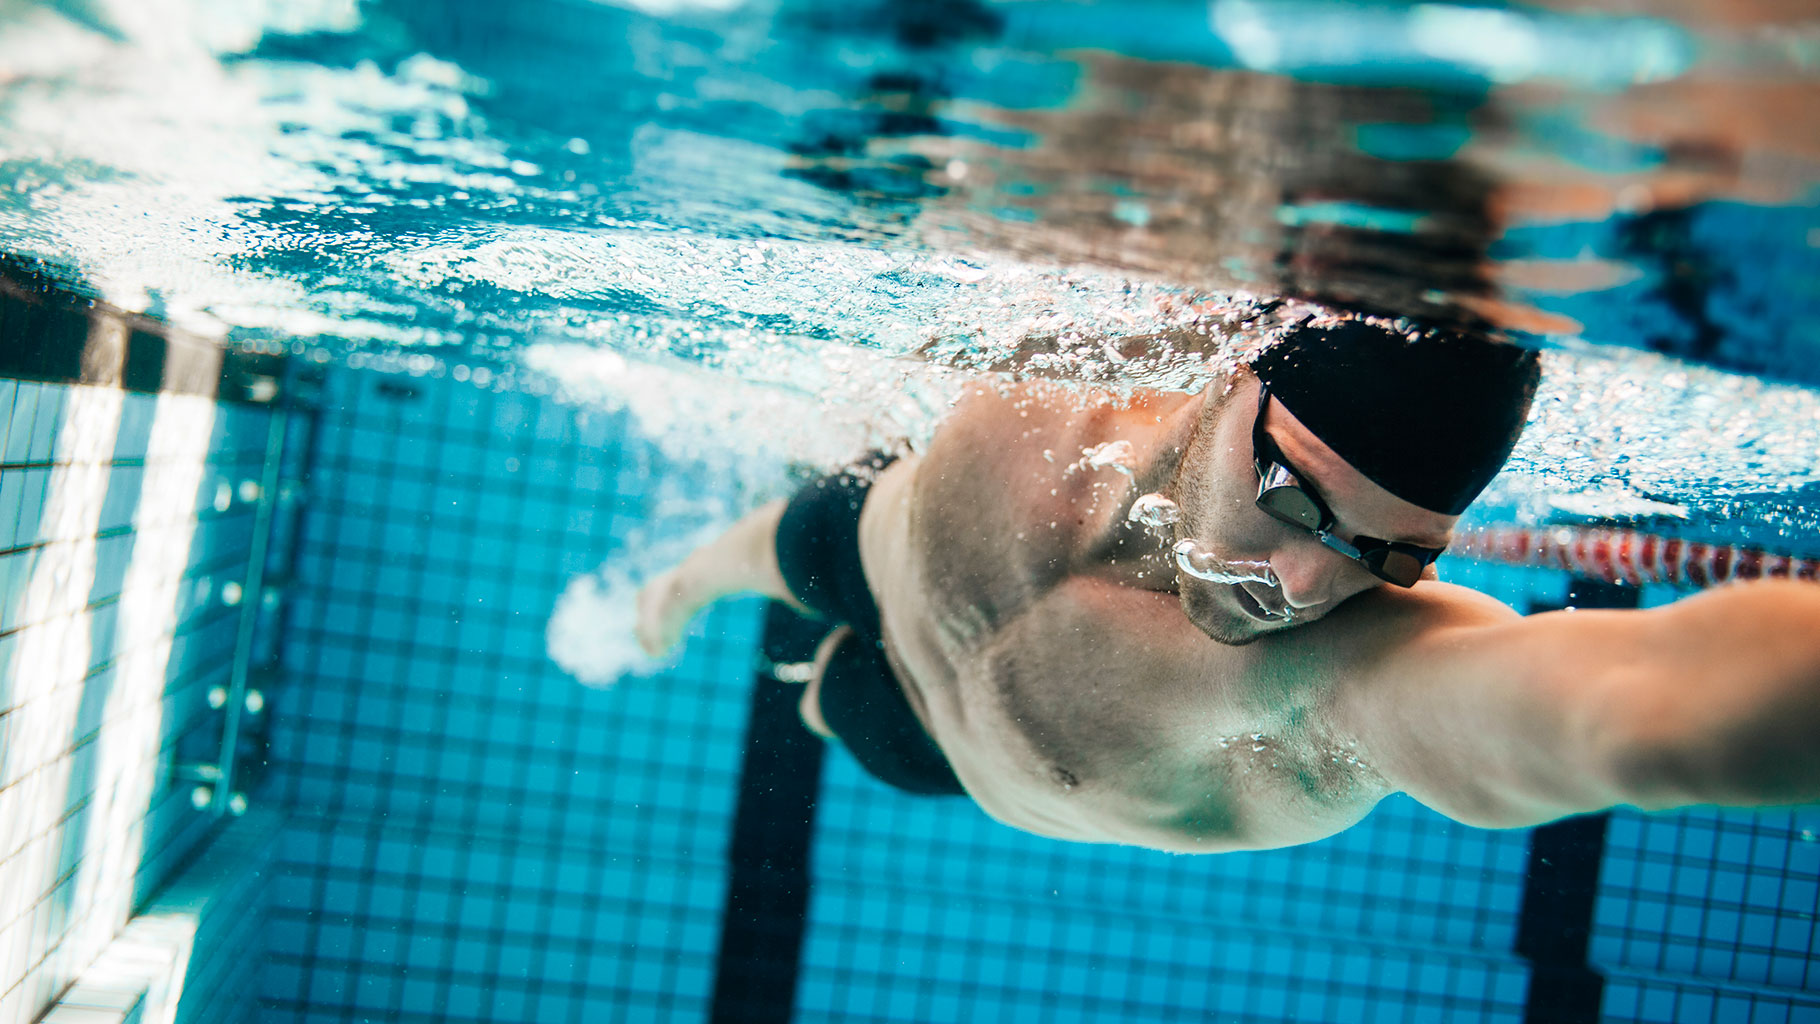 nutrizionista nuoto agonistico, foto con nuotatore professionista immerso nell'acqua di una piscina olimpionica